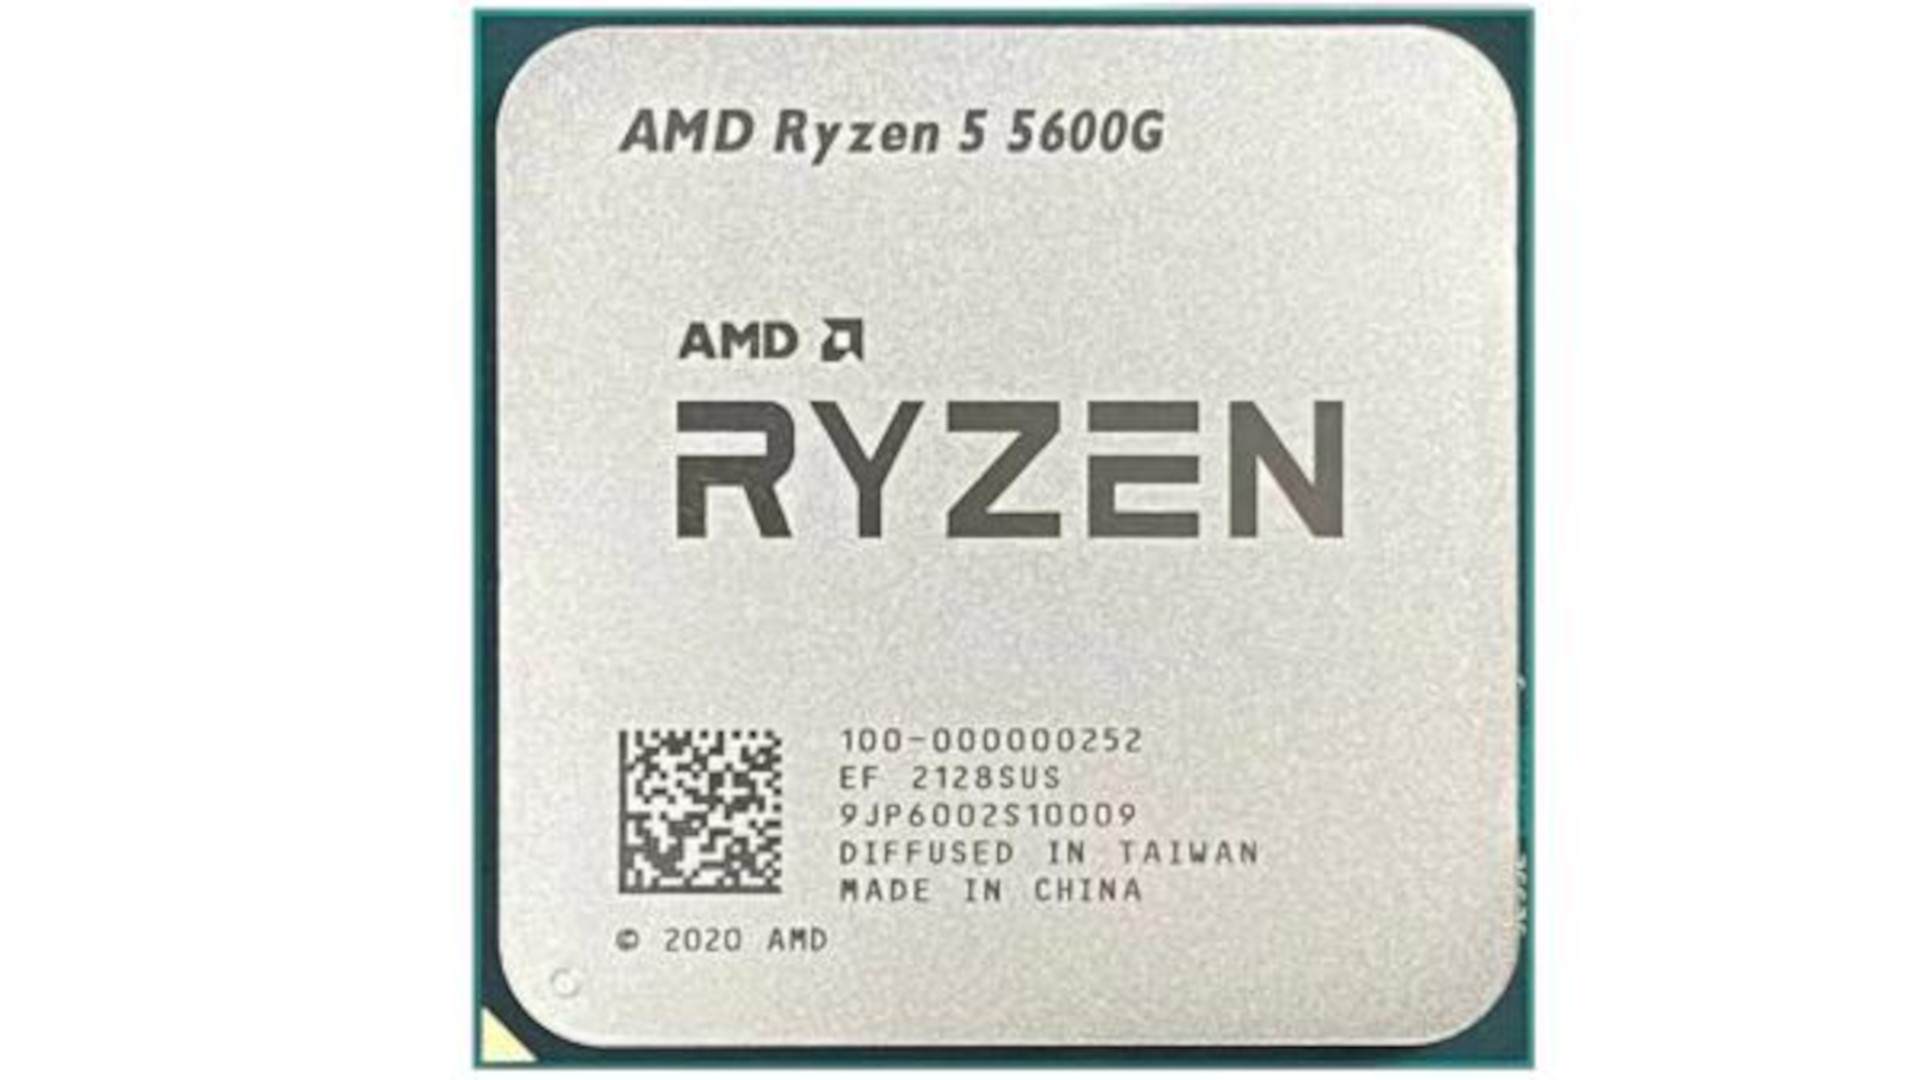 AMD Ryzen 5 5600G 5